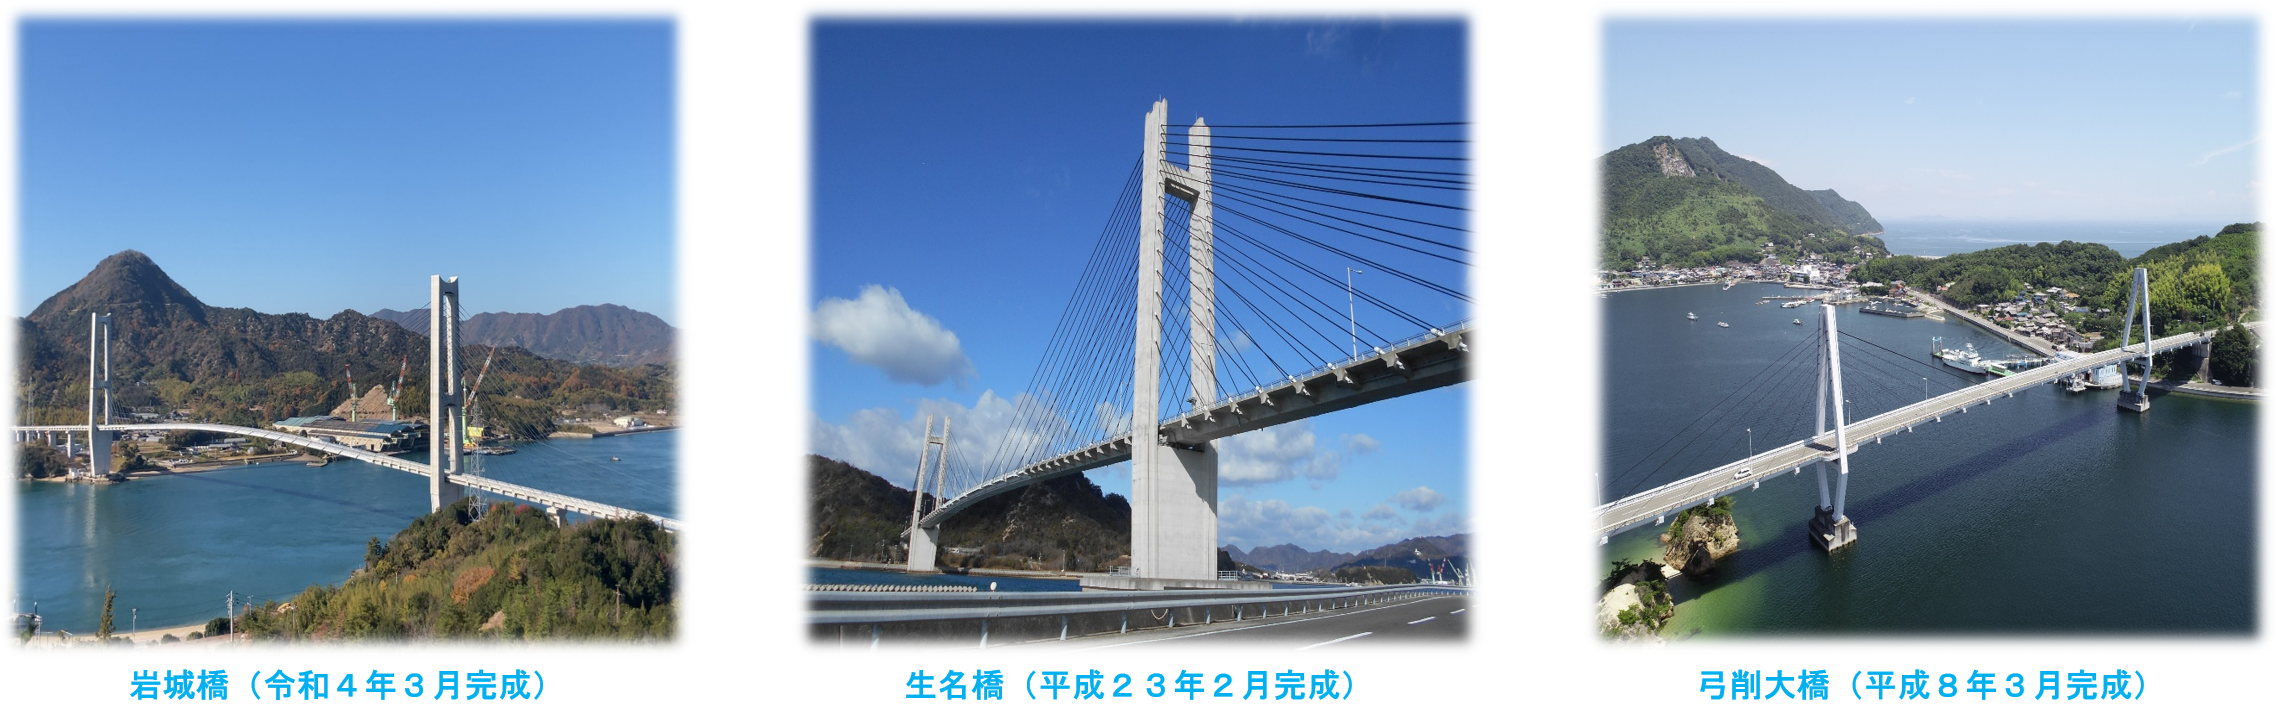 上島架橋整備事業の概要の画像2